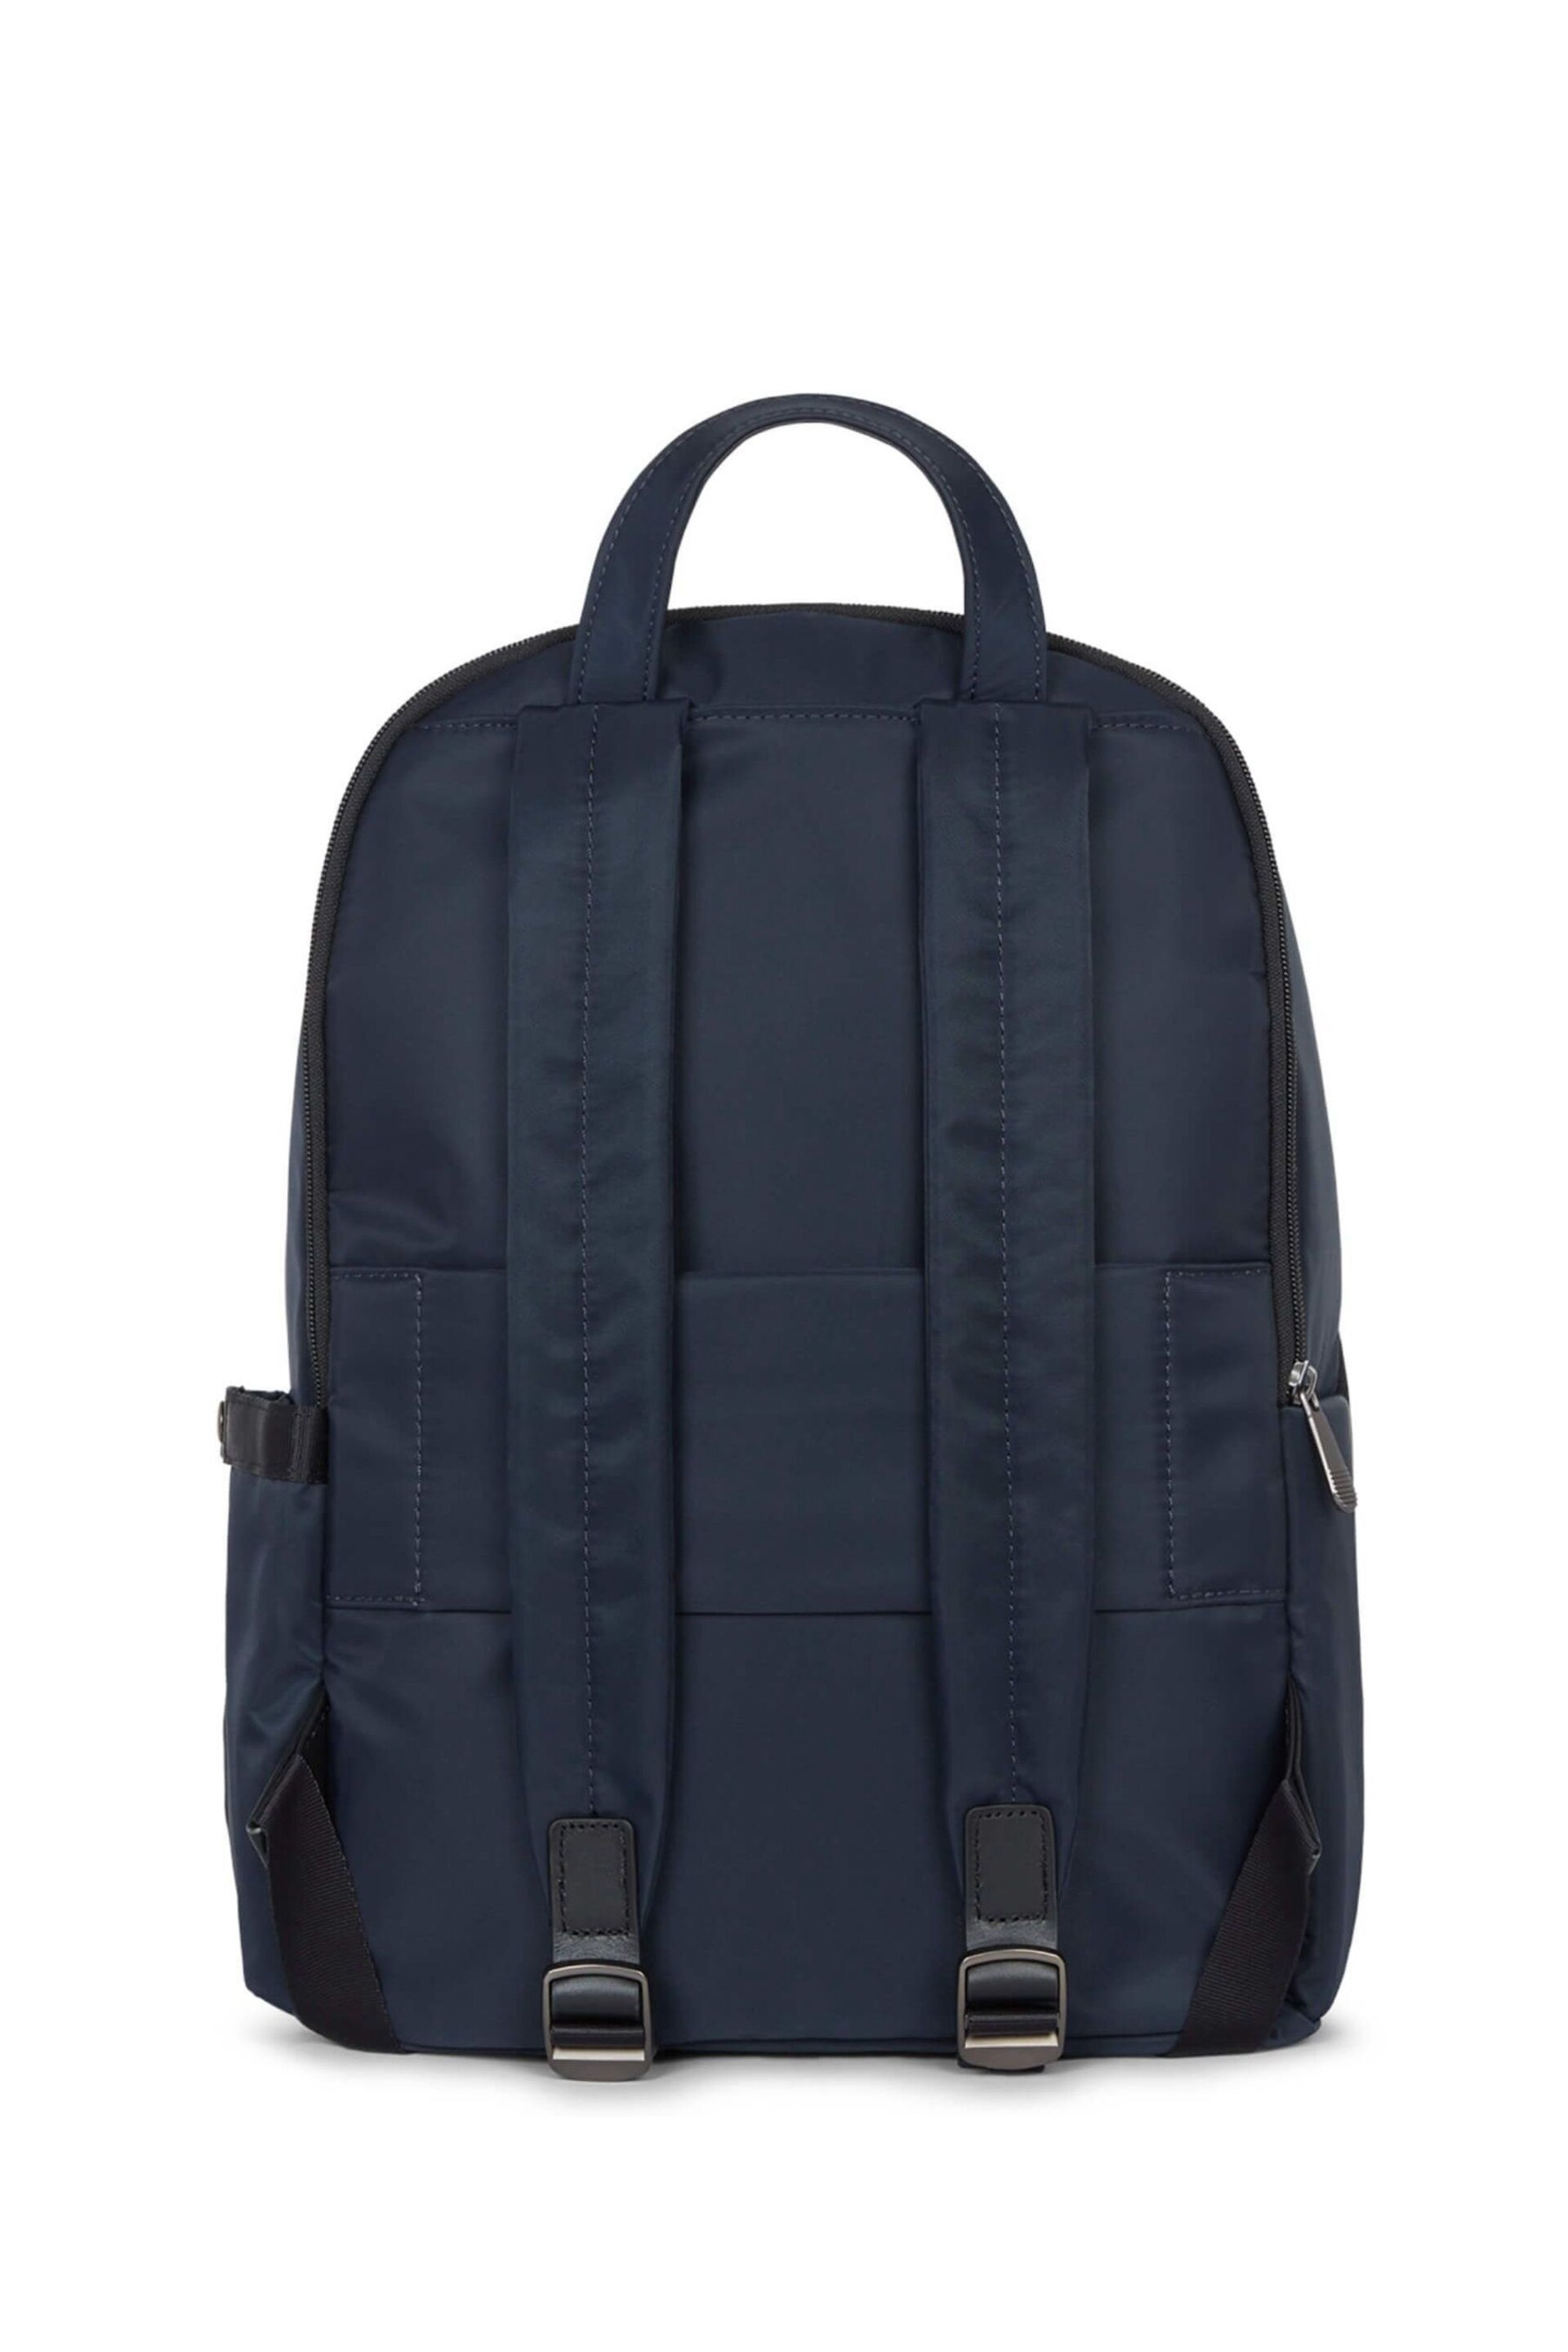 Antler Blue Chelsea Large Backpack - Image 2 of 5